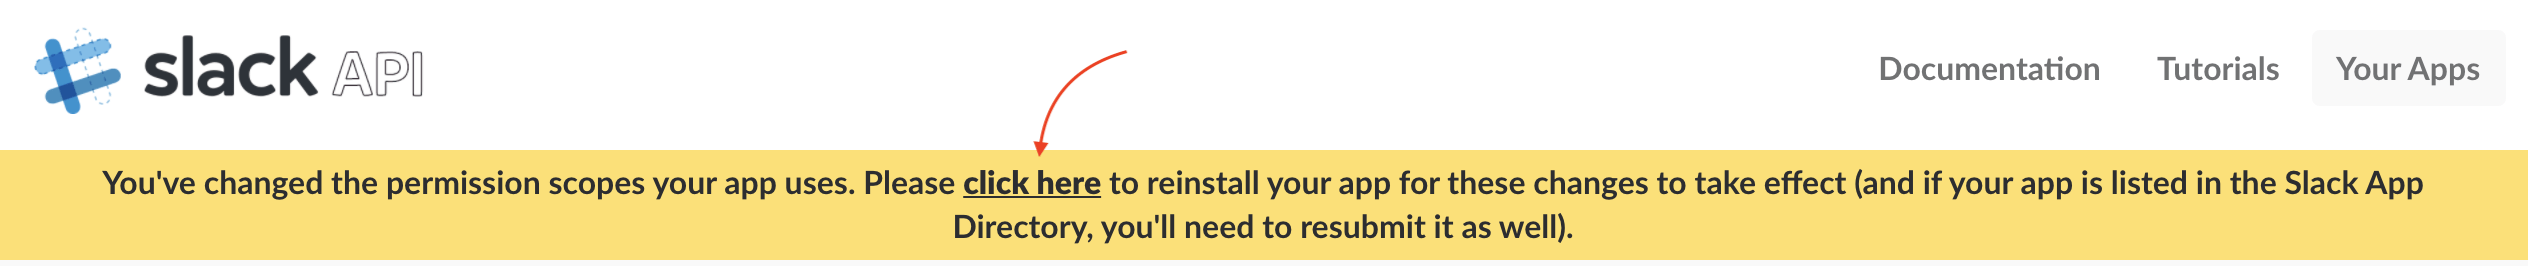 Reinstall app